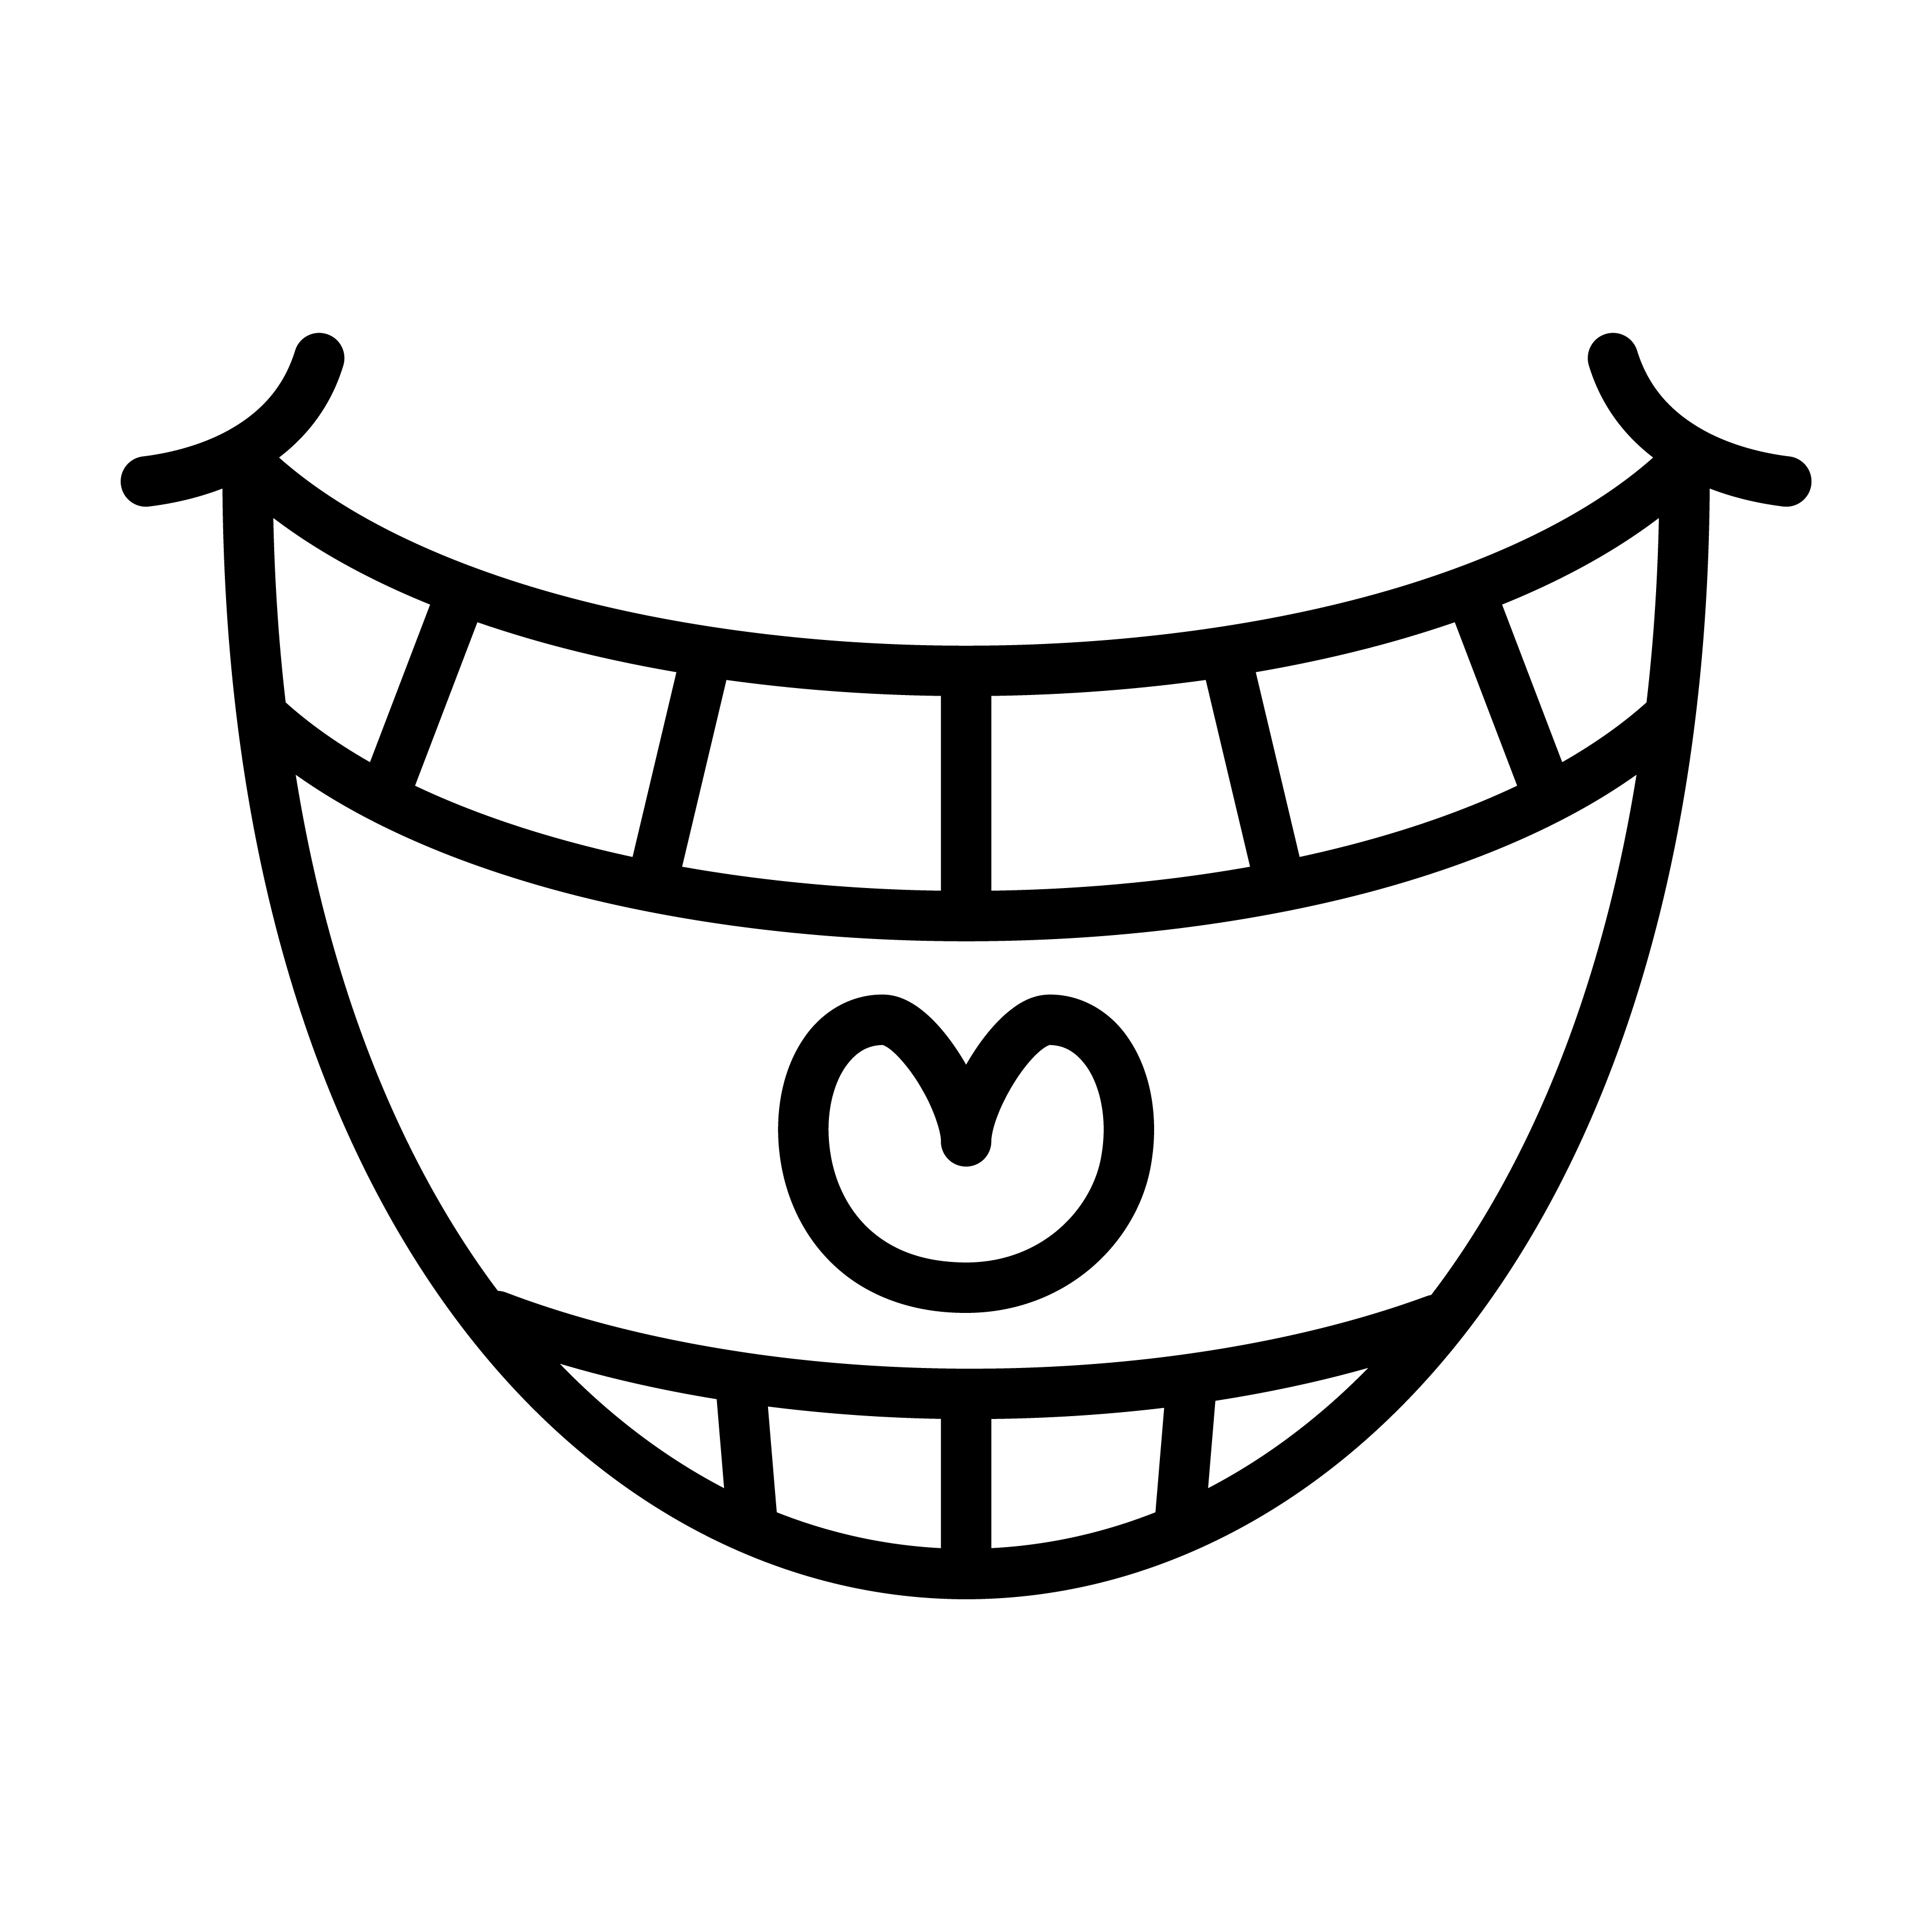 Download Big Happy Toothy Cartoon Smile vector icon - Download Free ...